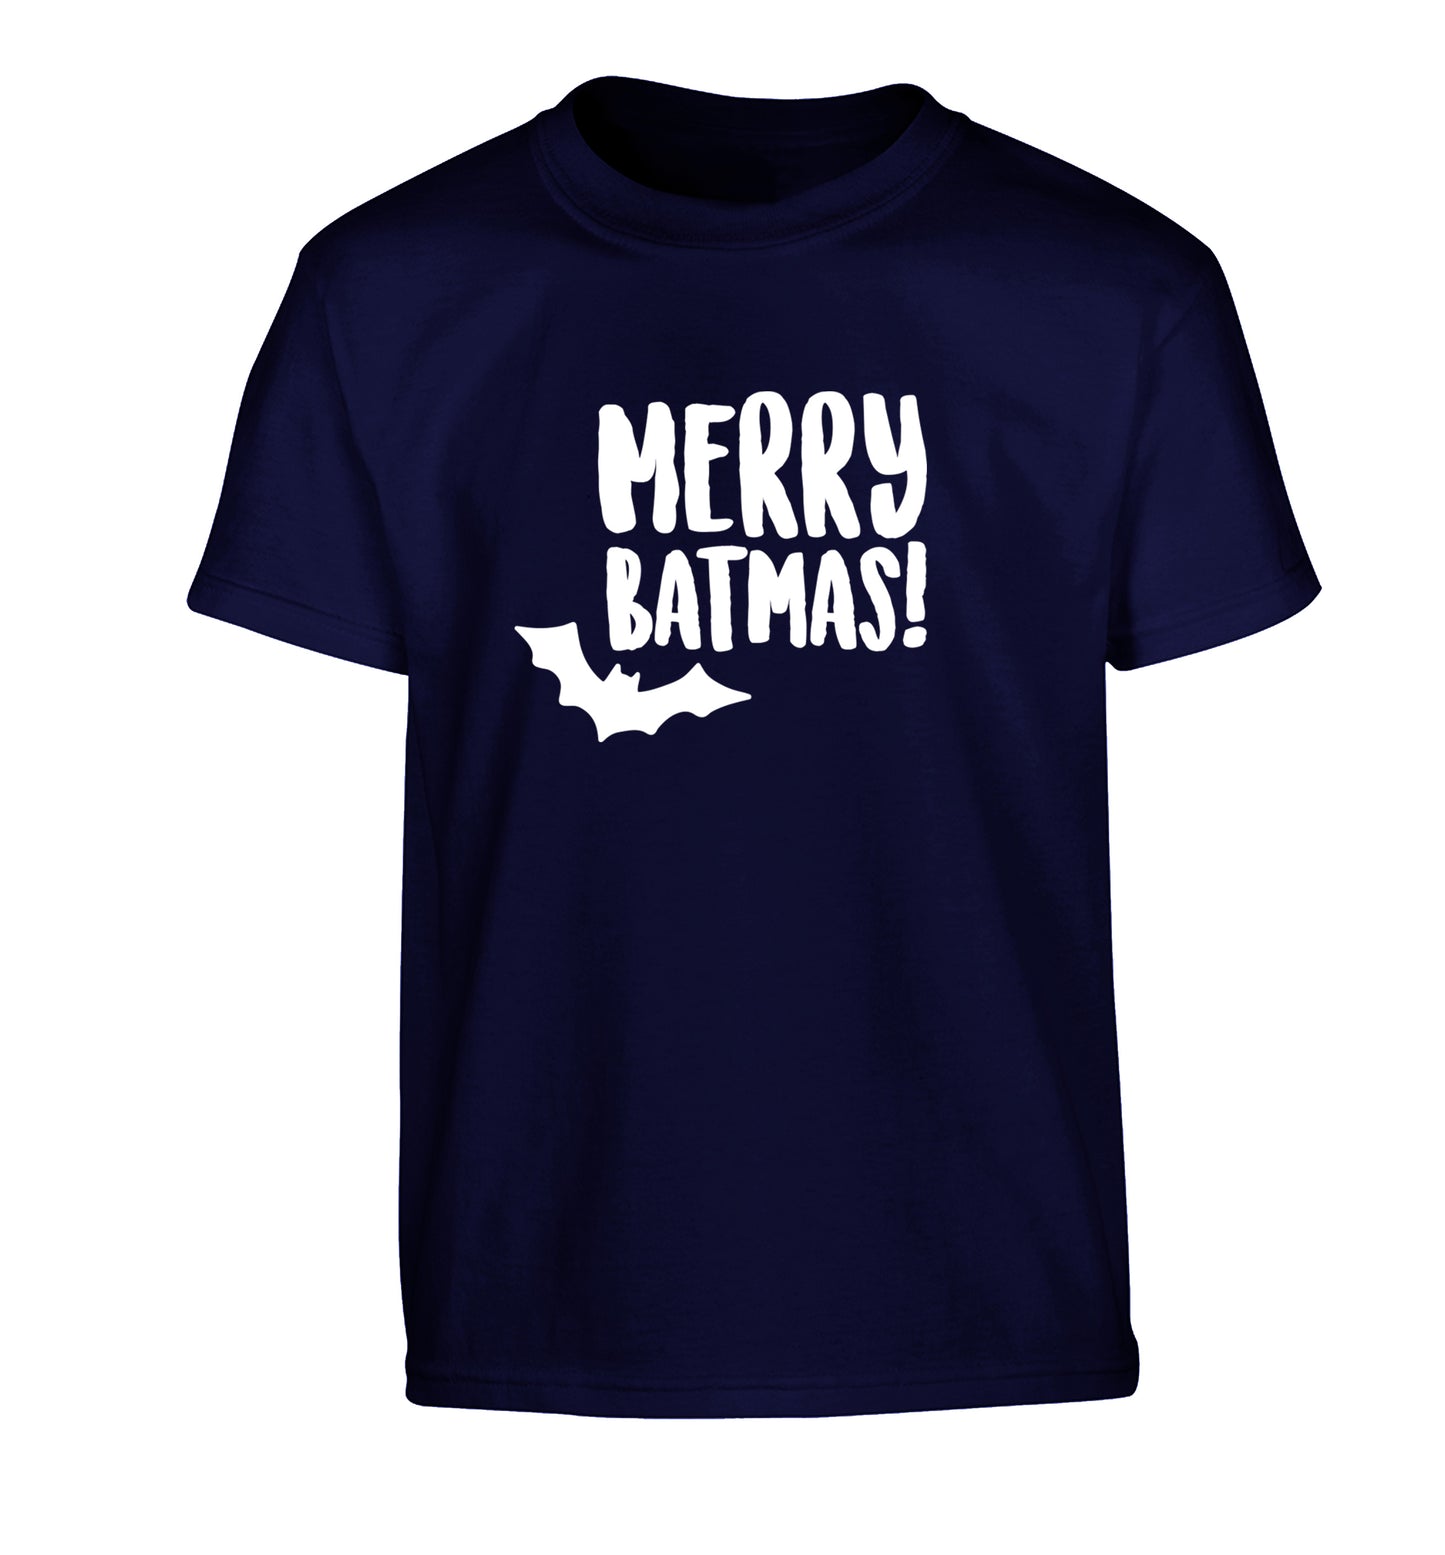 Merry Batmas Children's navy Tshirt 12-14 Years